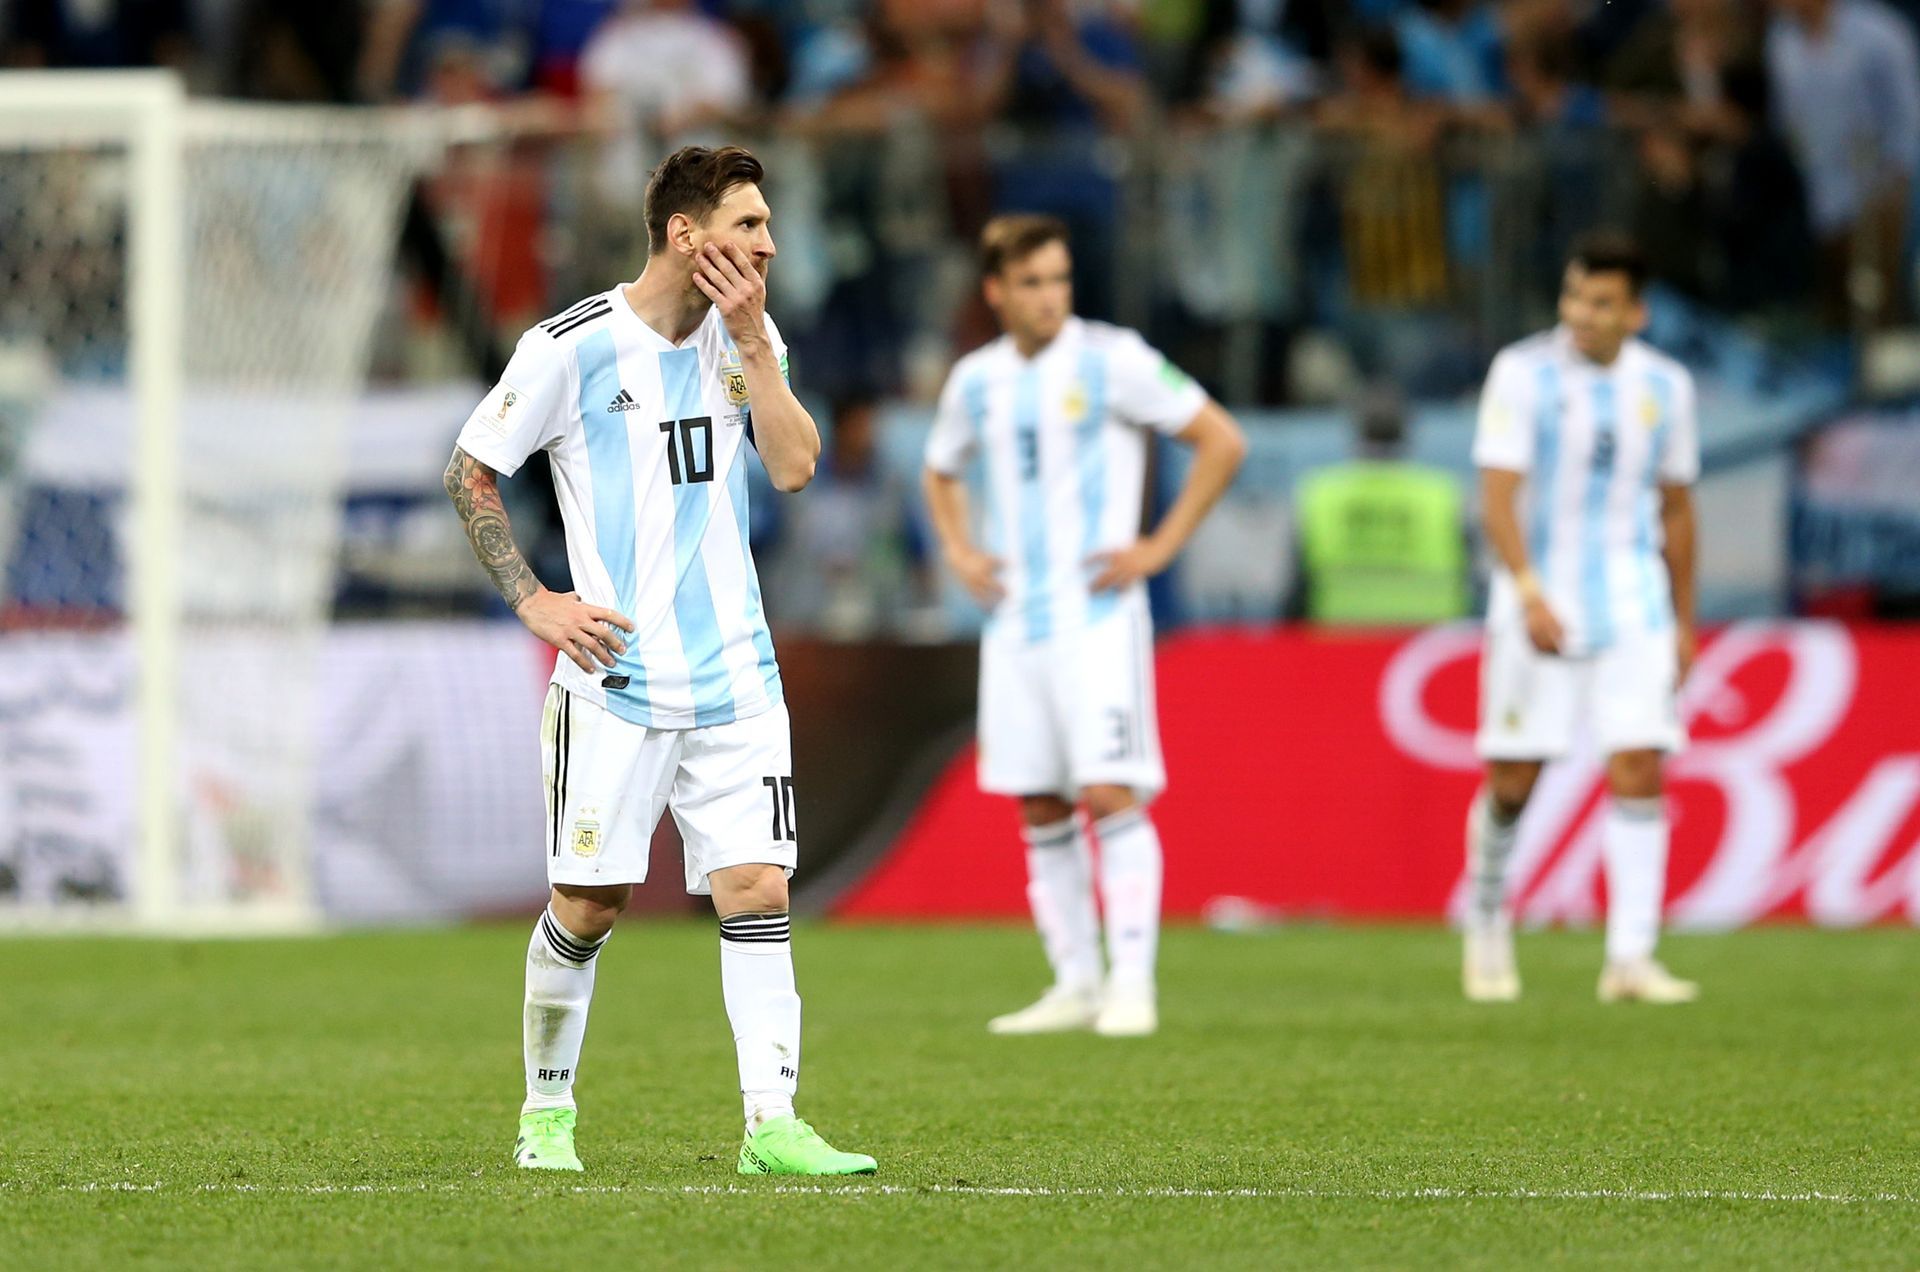 Аржентина бе един разбит и тъжен отбор, а Лео не успя да го събере и заведе далеч.